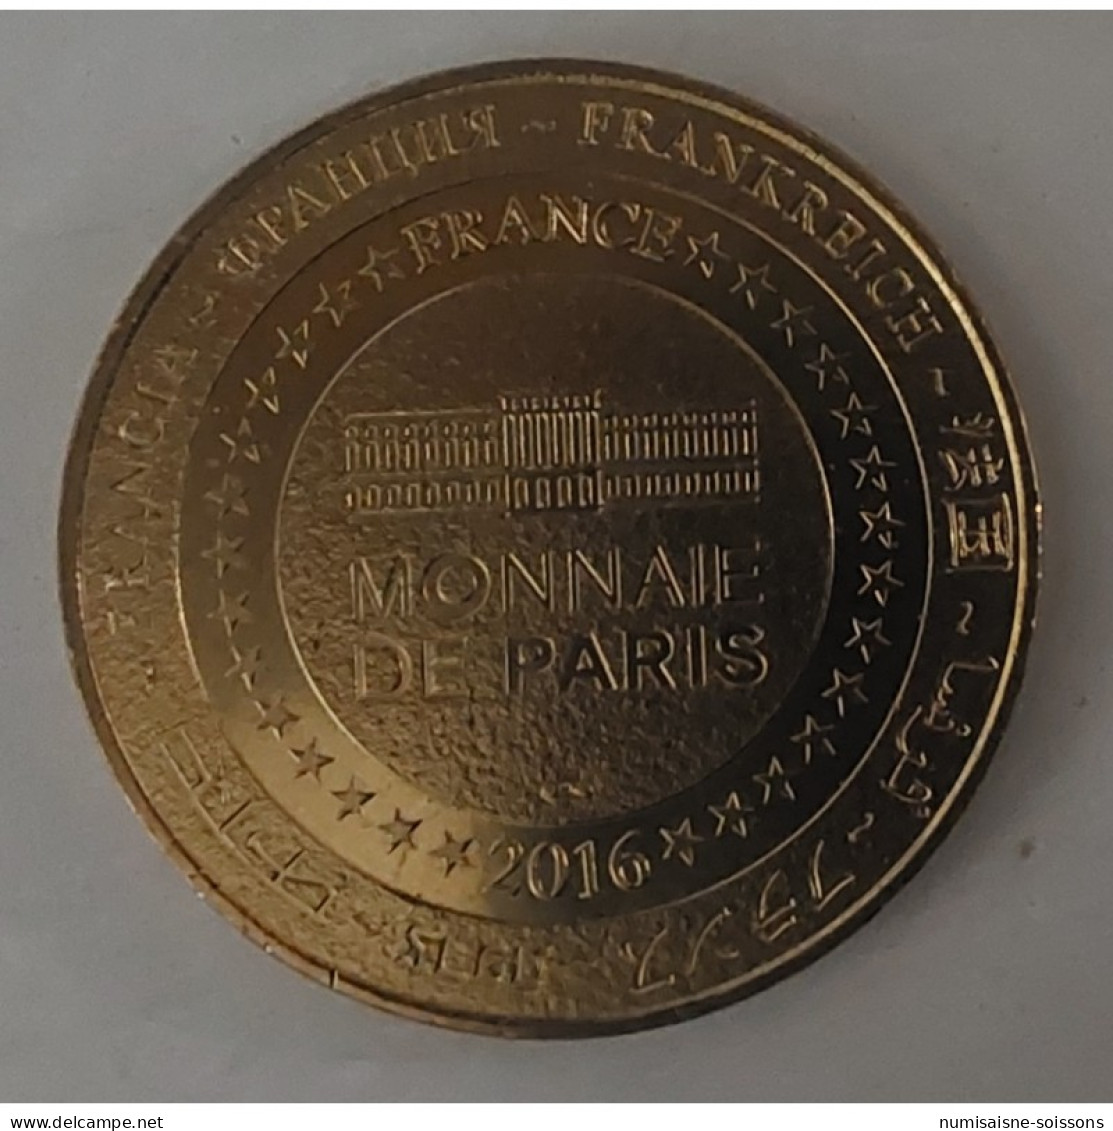 75 - PARIS - ÉGLISE SAINT GERMAIN DES PRÉS - Monnaie De Paris - 2016 - 2016